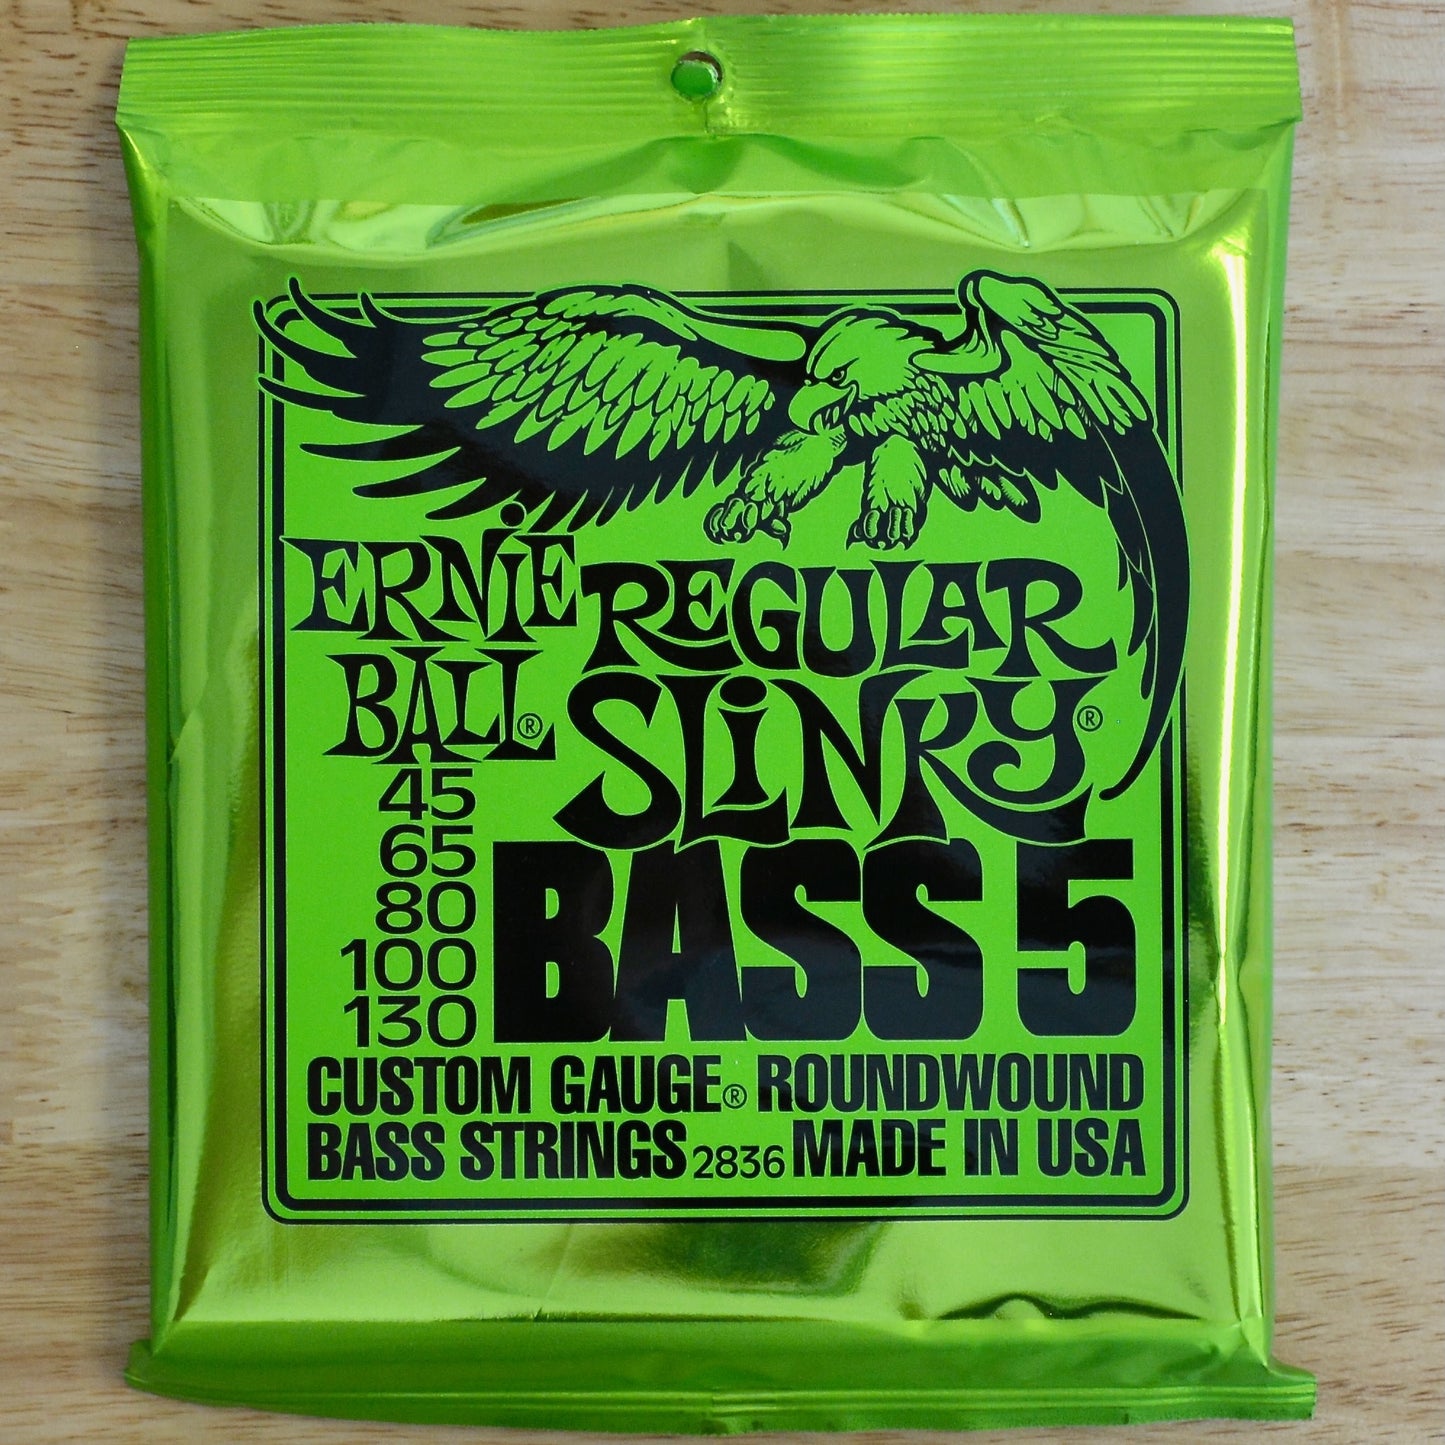 Ernie Ball Regular Slinky Bass 5